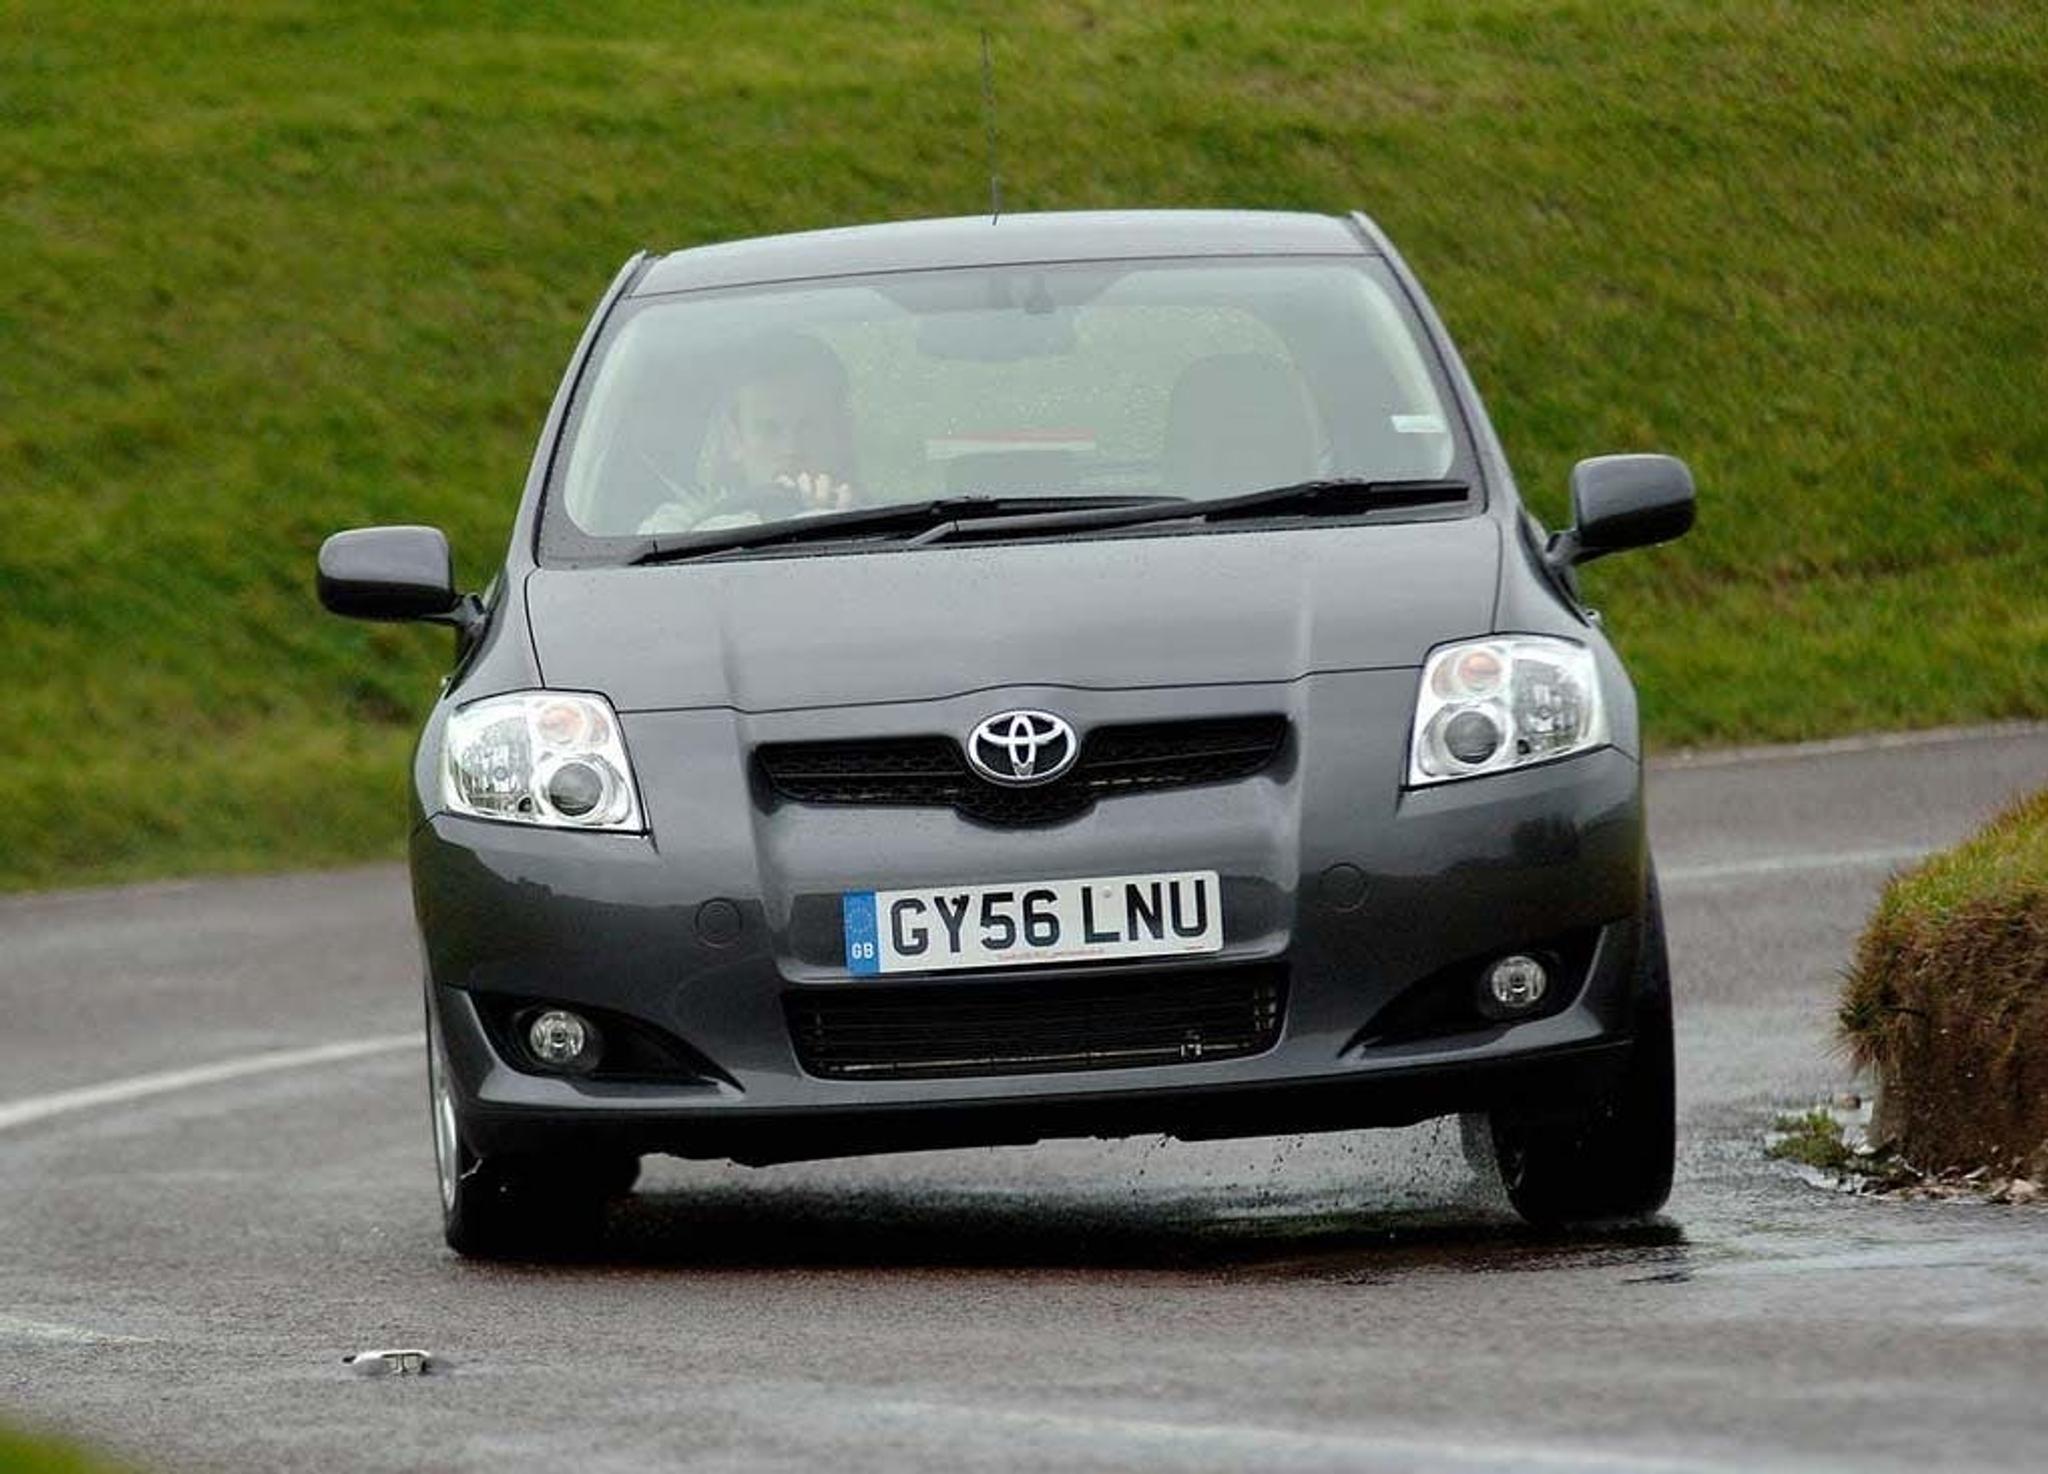 Szara Toyota Auris z numerem brytyjskim